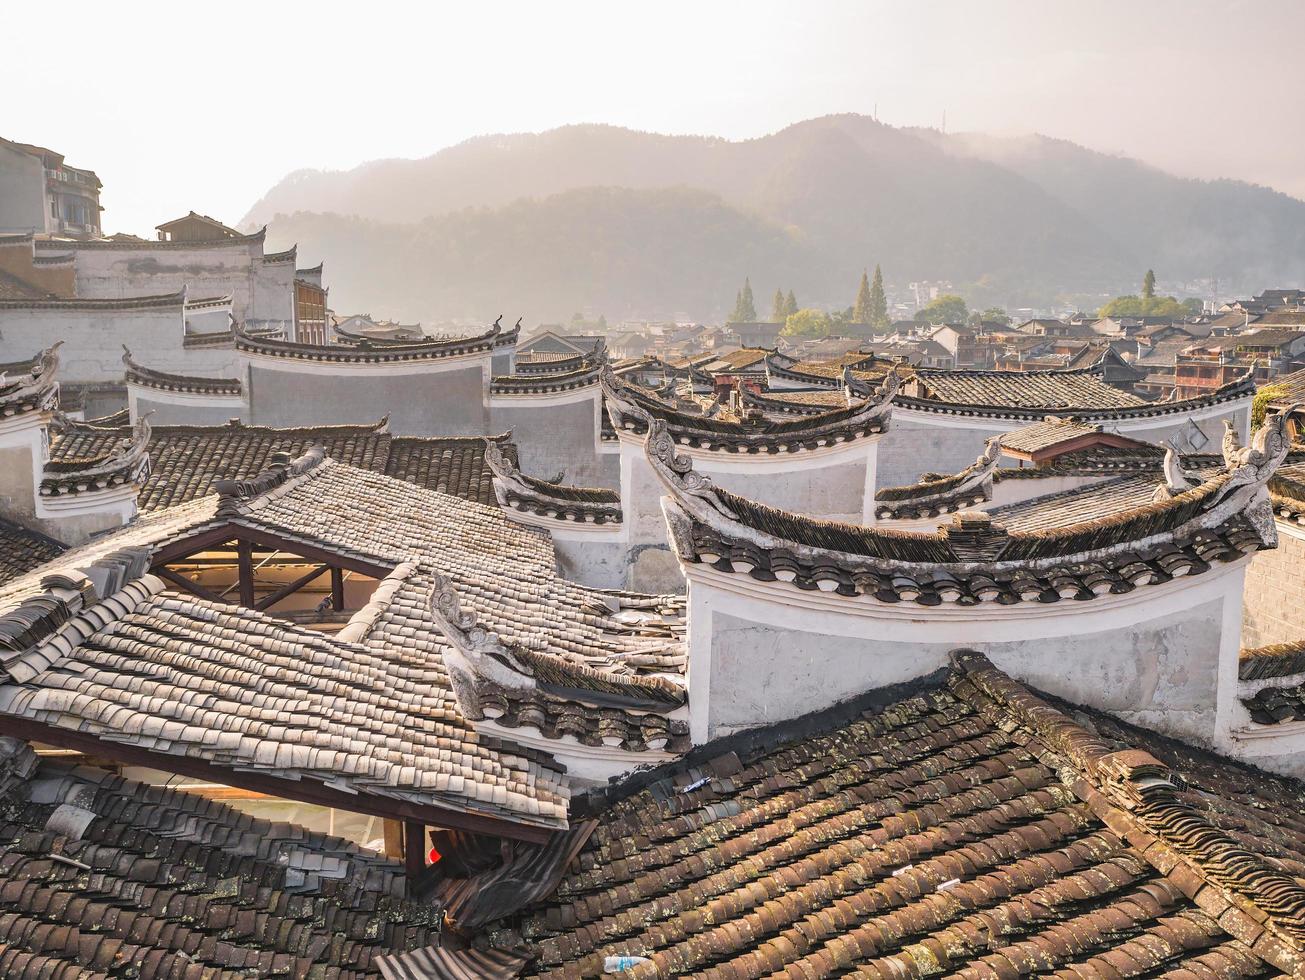 telhado da casa vintage chinesa na cidade velha de fenghuang. cidade antiga de phoenix ou condado de fenghuang é um condado da província de hunan, china foto